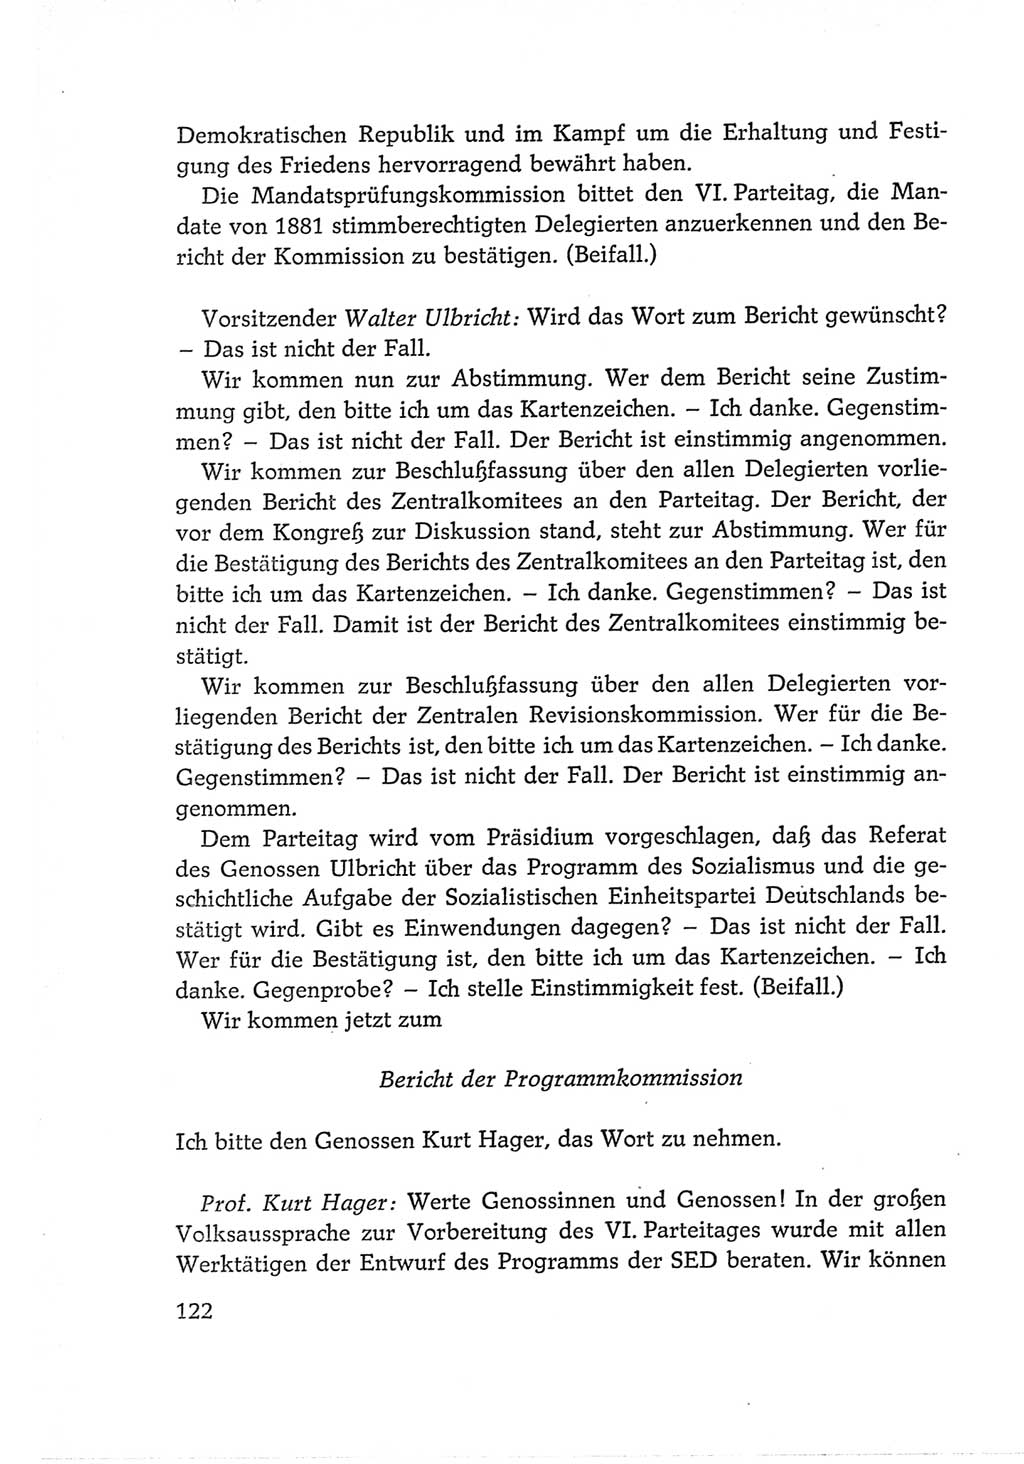 Protokoll der Verhandlungen des Ⅵ. Parteitages der Sozialistischen Einheitspartei Deutschlands (SED) [Deutsche Demokratische Republik (DDR)] 1963, Band Ⅱ, Seite 122 (Prot. Verh. Ⅵ. PT SED DDR 1963, Bd. Ⅱ, S. 122)